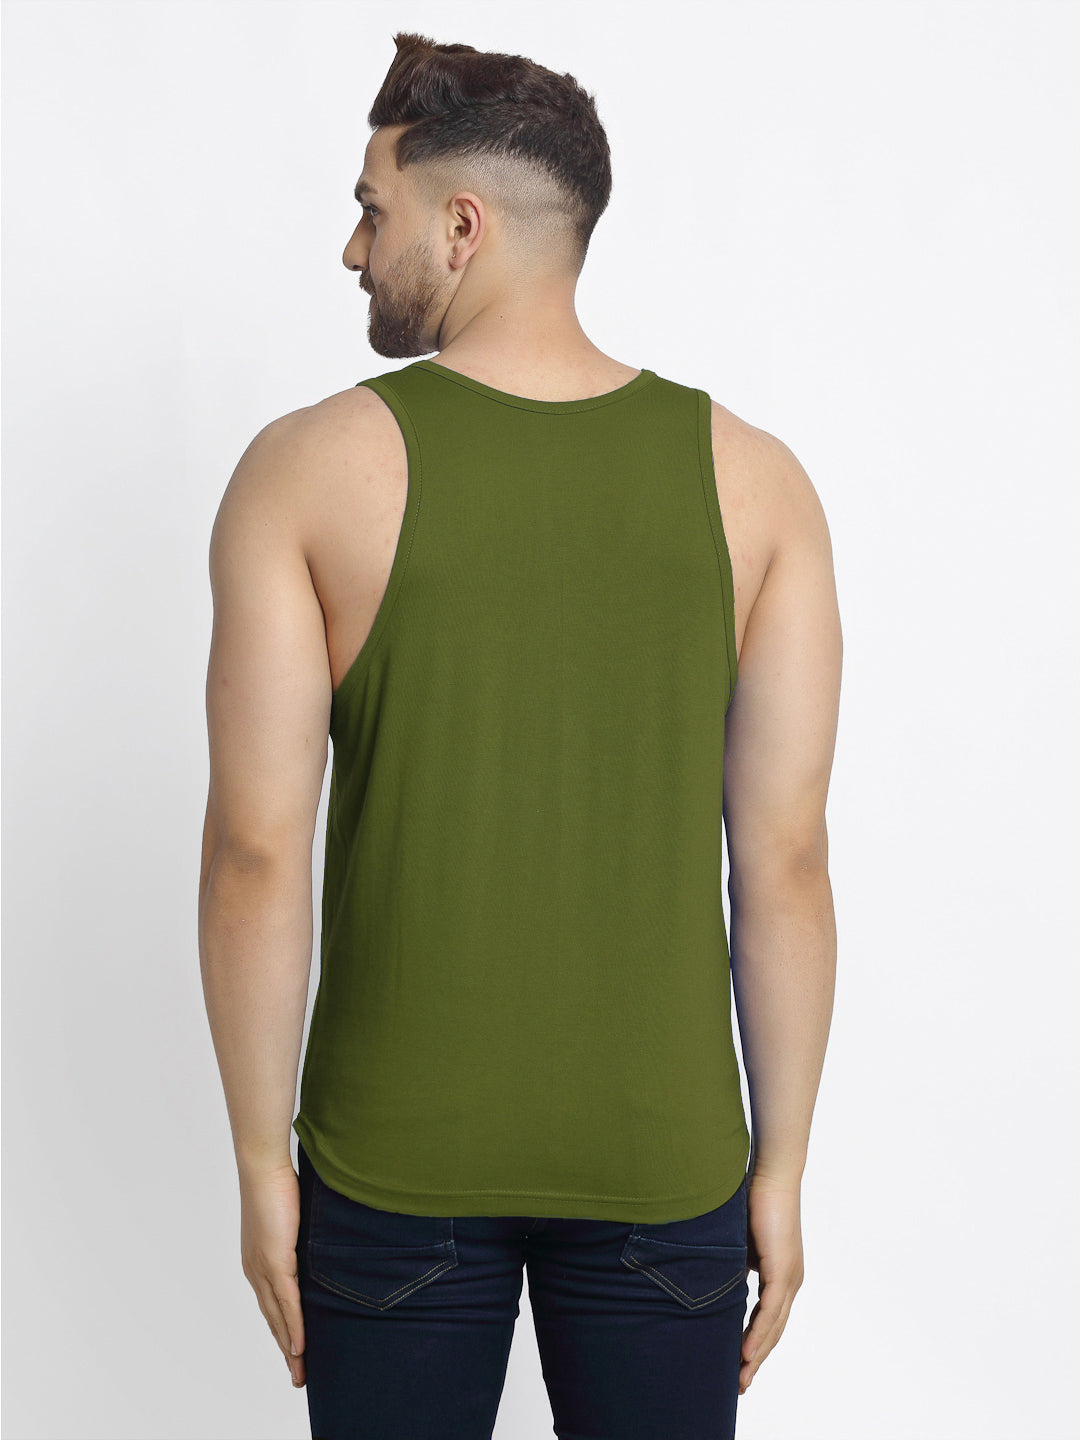 Men's Pack of 2 Coral & olive-green Printed Gym vest - Friskers